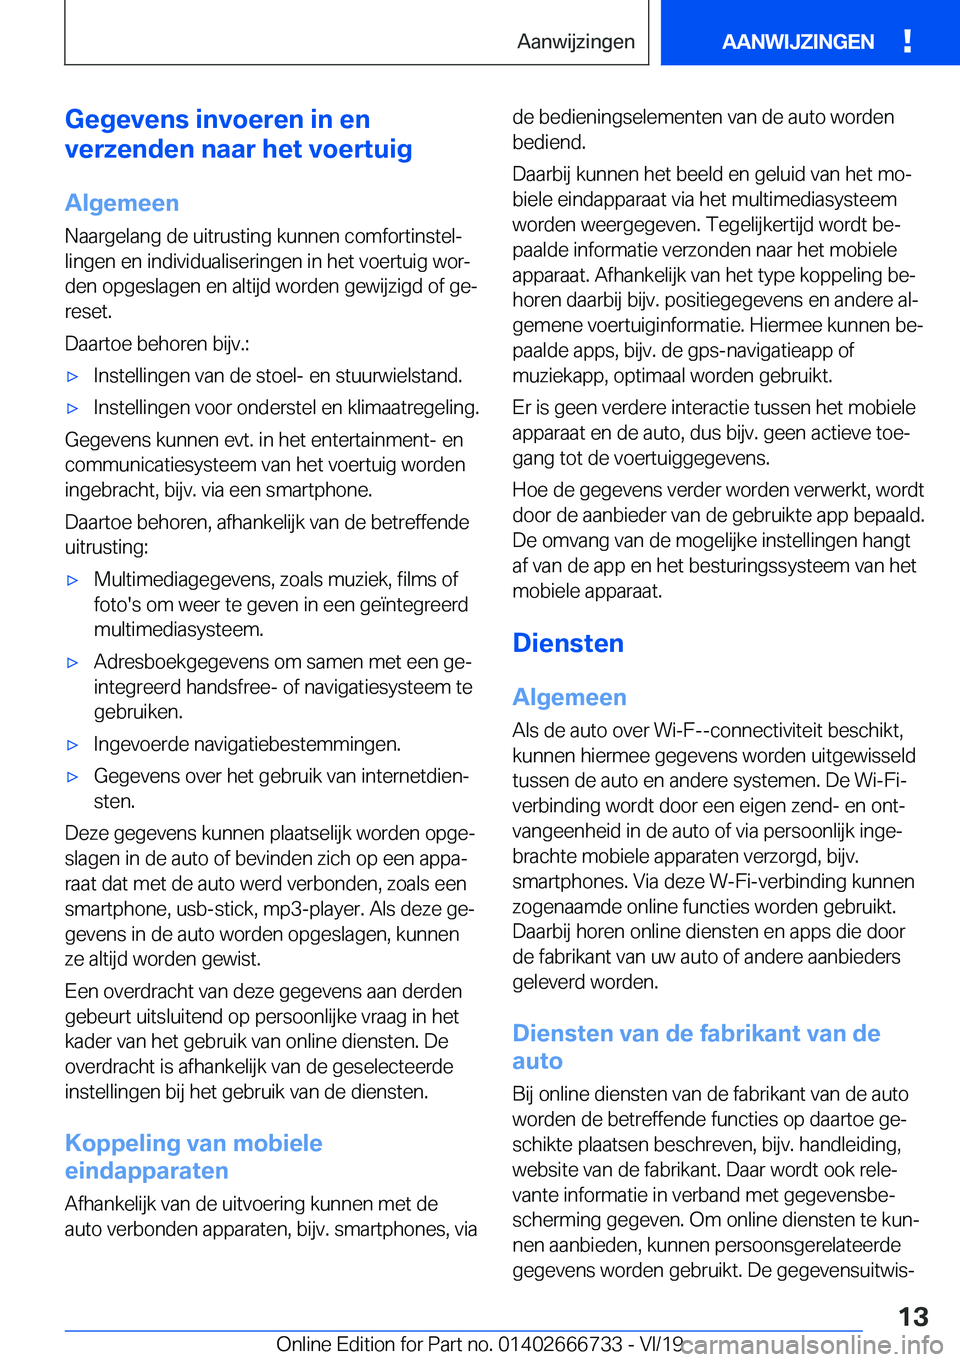 BMW M5 2020  Instructieboekjes (in Dutch) �G�e�g�e�v�e�n�s��i�n�v�o�e�r�e�n��i�n��e�n
�v�e�r�z�e�n�d�e�n��n�a�a�r��h�e�t��v�o�e�r�t�u�i�g
�A�l�g�e�m�e�e�n
�N�a�a�r�g�e�l�a�n�g��d�e��u�i�t�r�u�s�t�i�n�g��k�u�n�n�e�n��c�o�m�f�o�r�t�i�